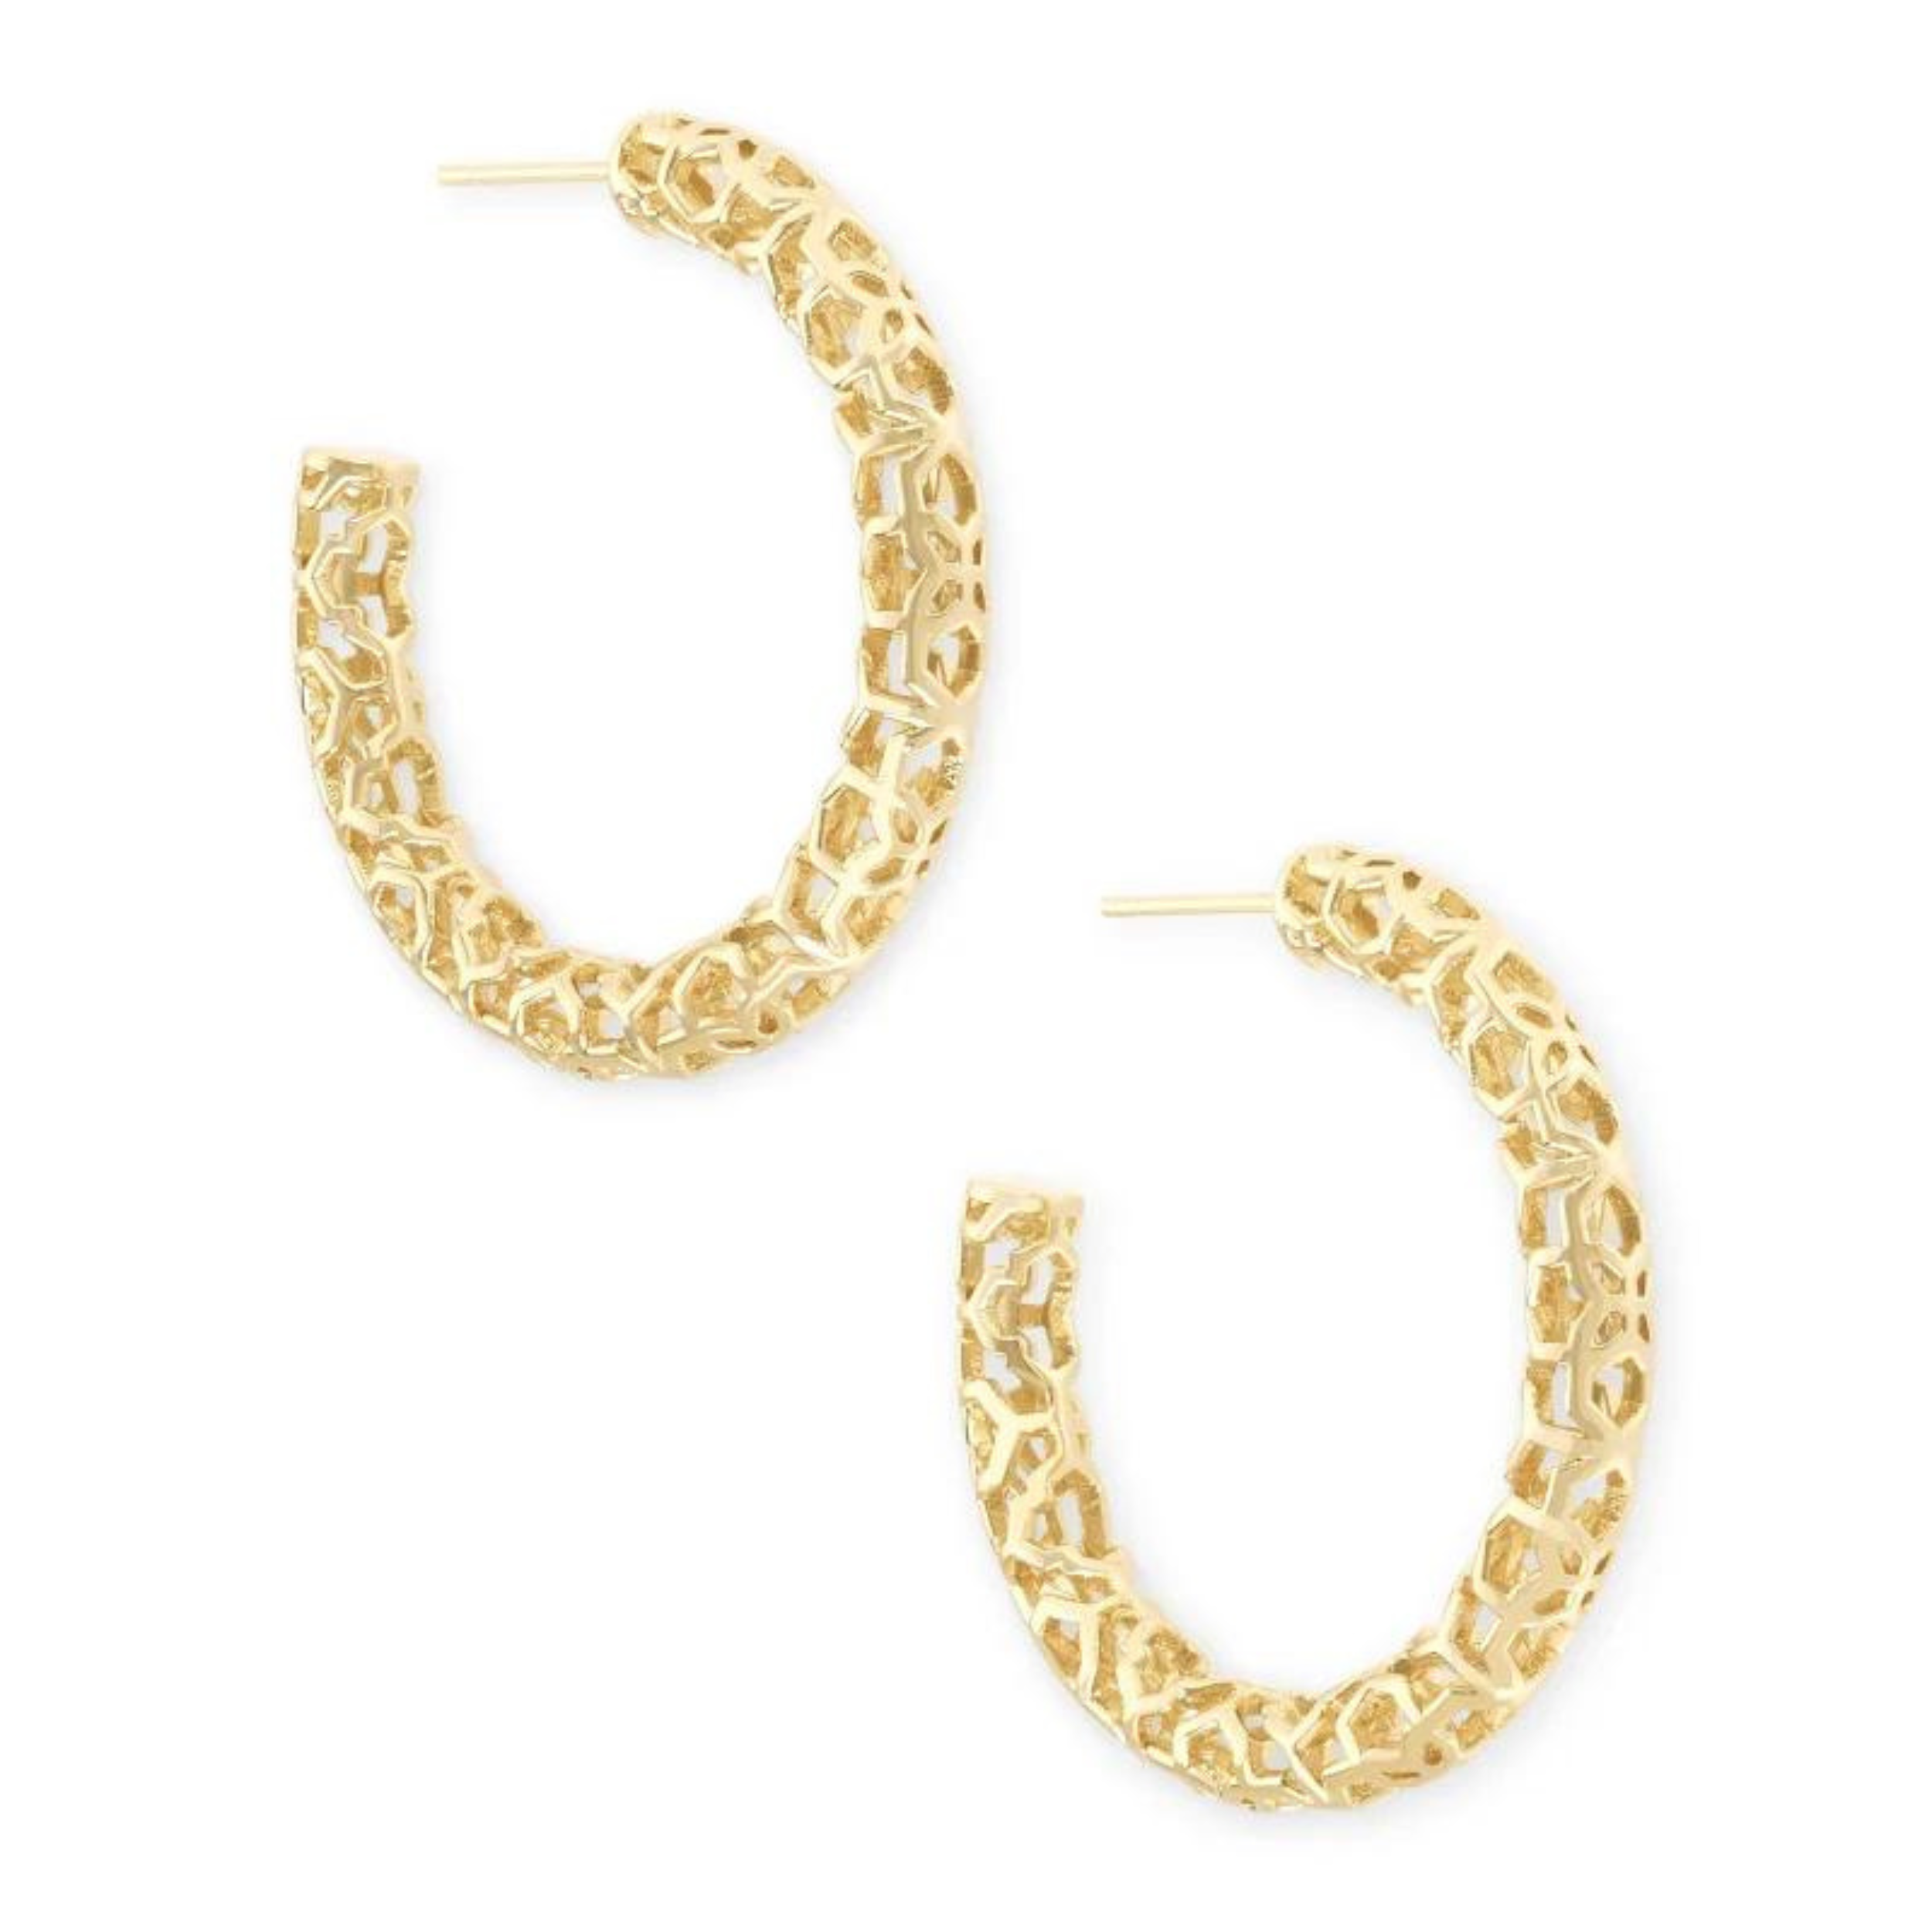 Gold hoop earrings with filigree detailing.